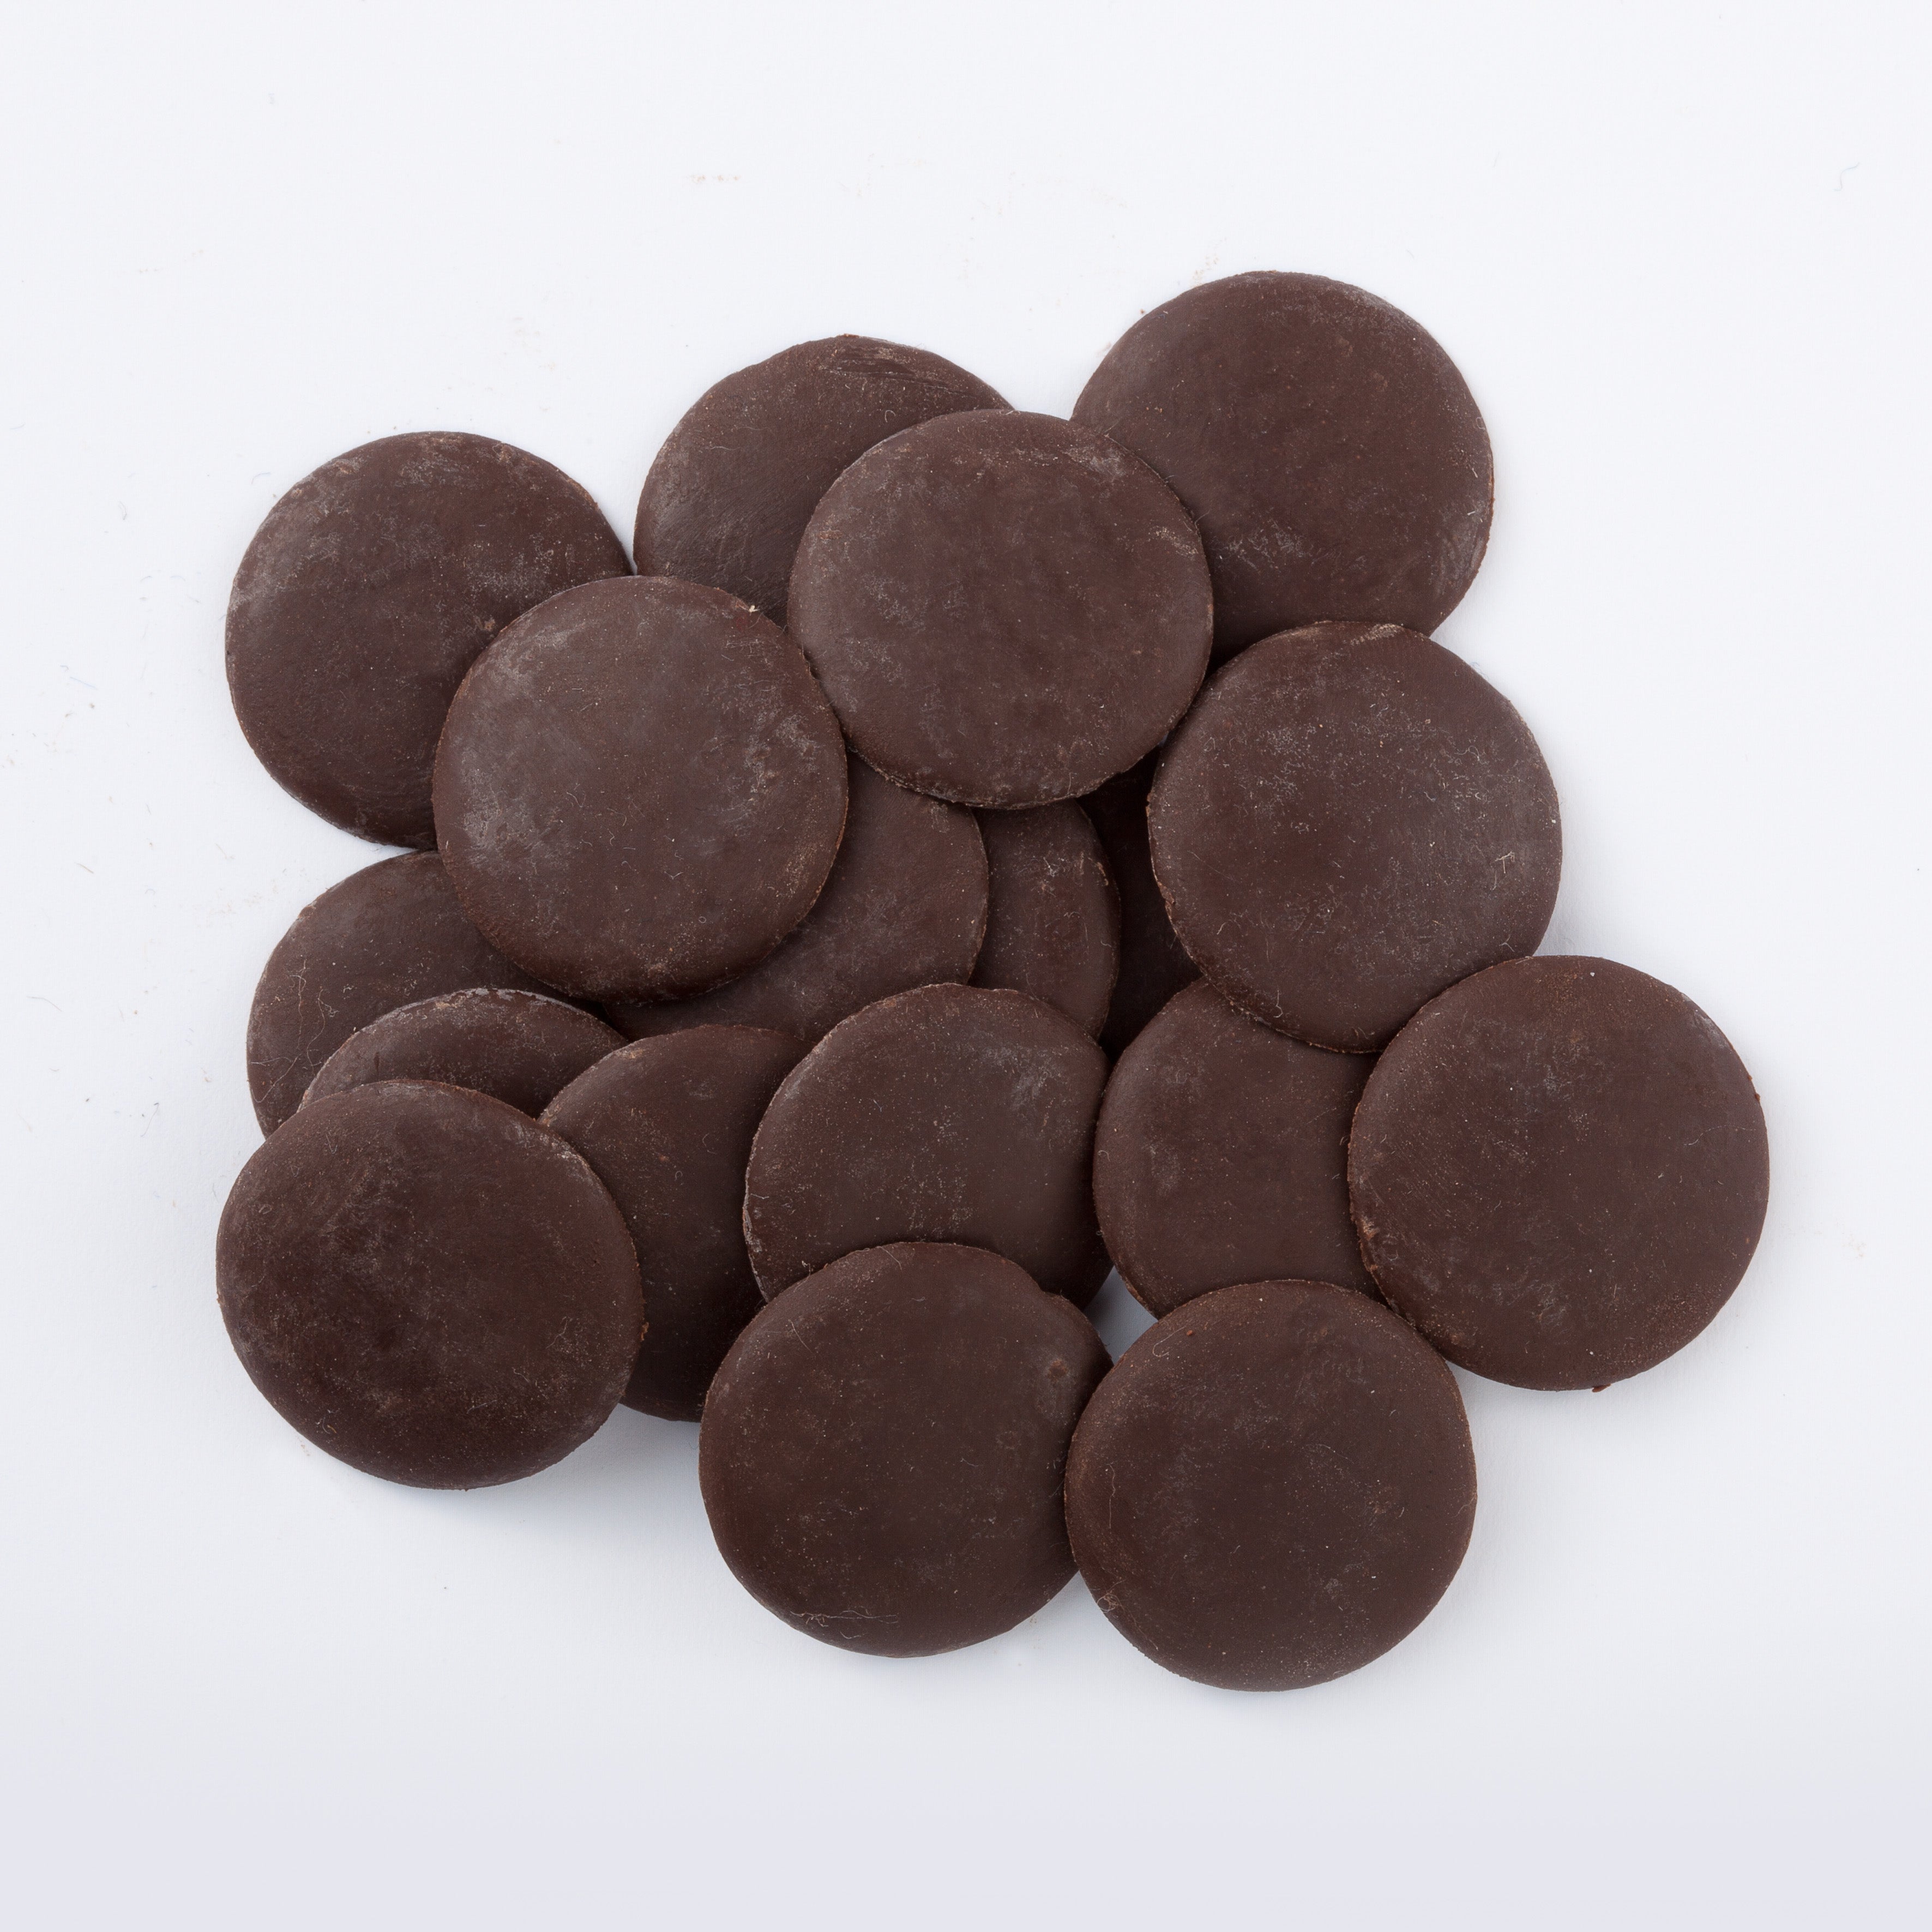 Sicao Boton Amargo 52%  Solidos De Cacao 250Gr